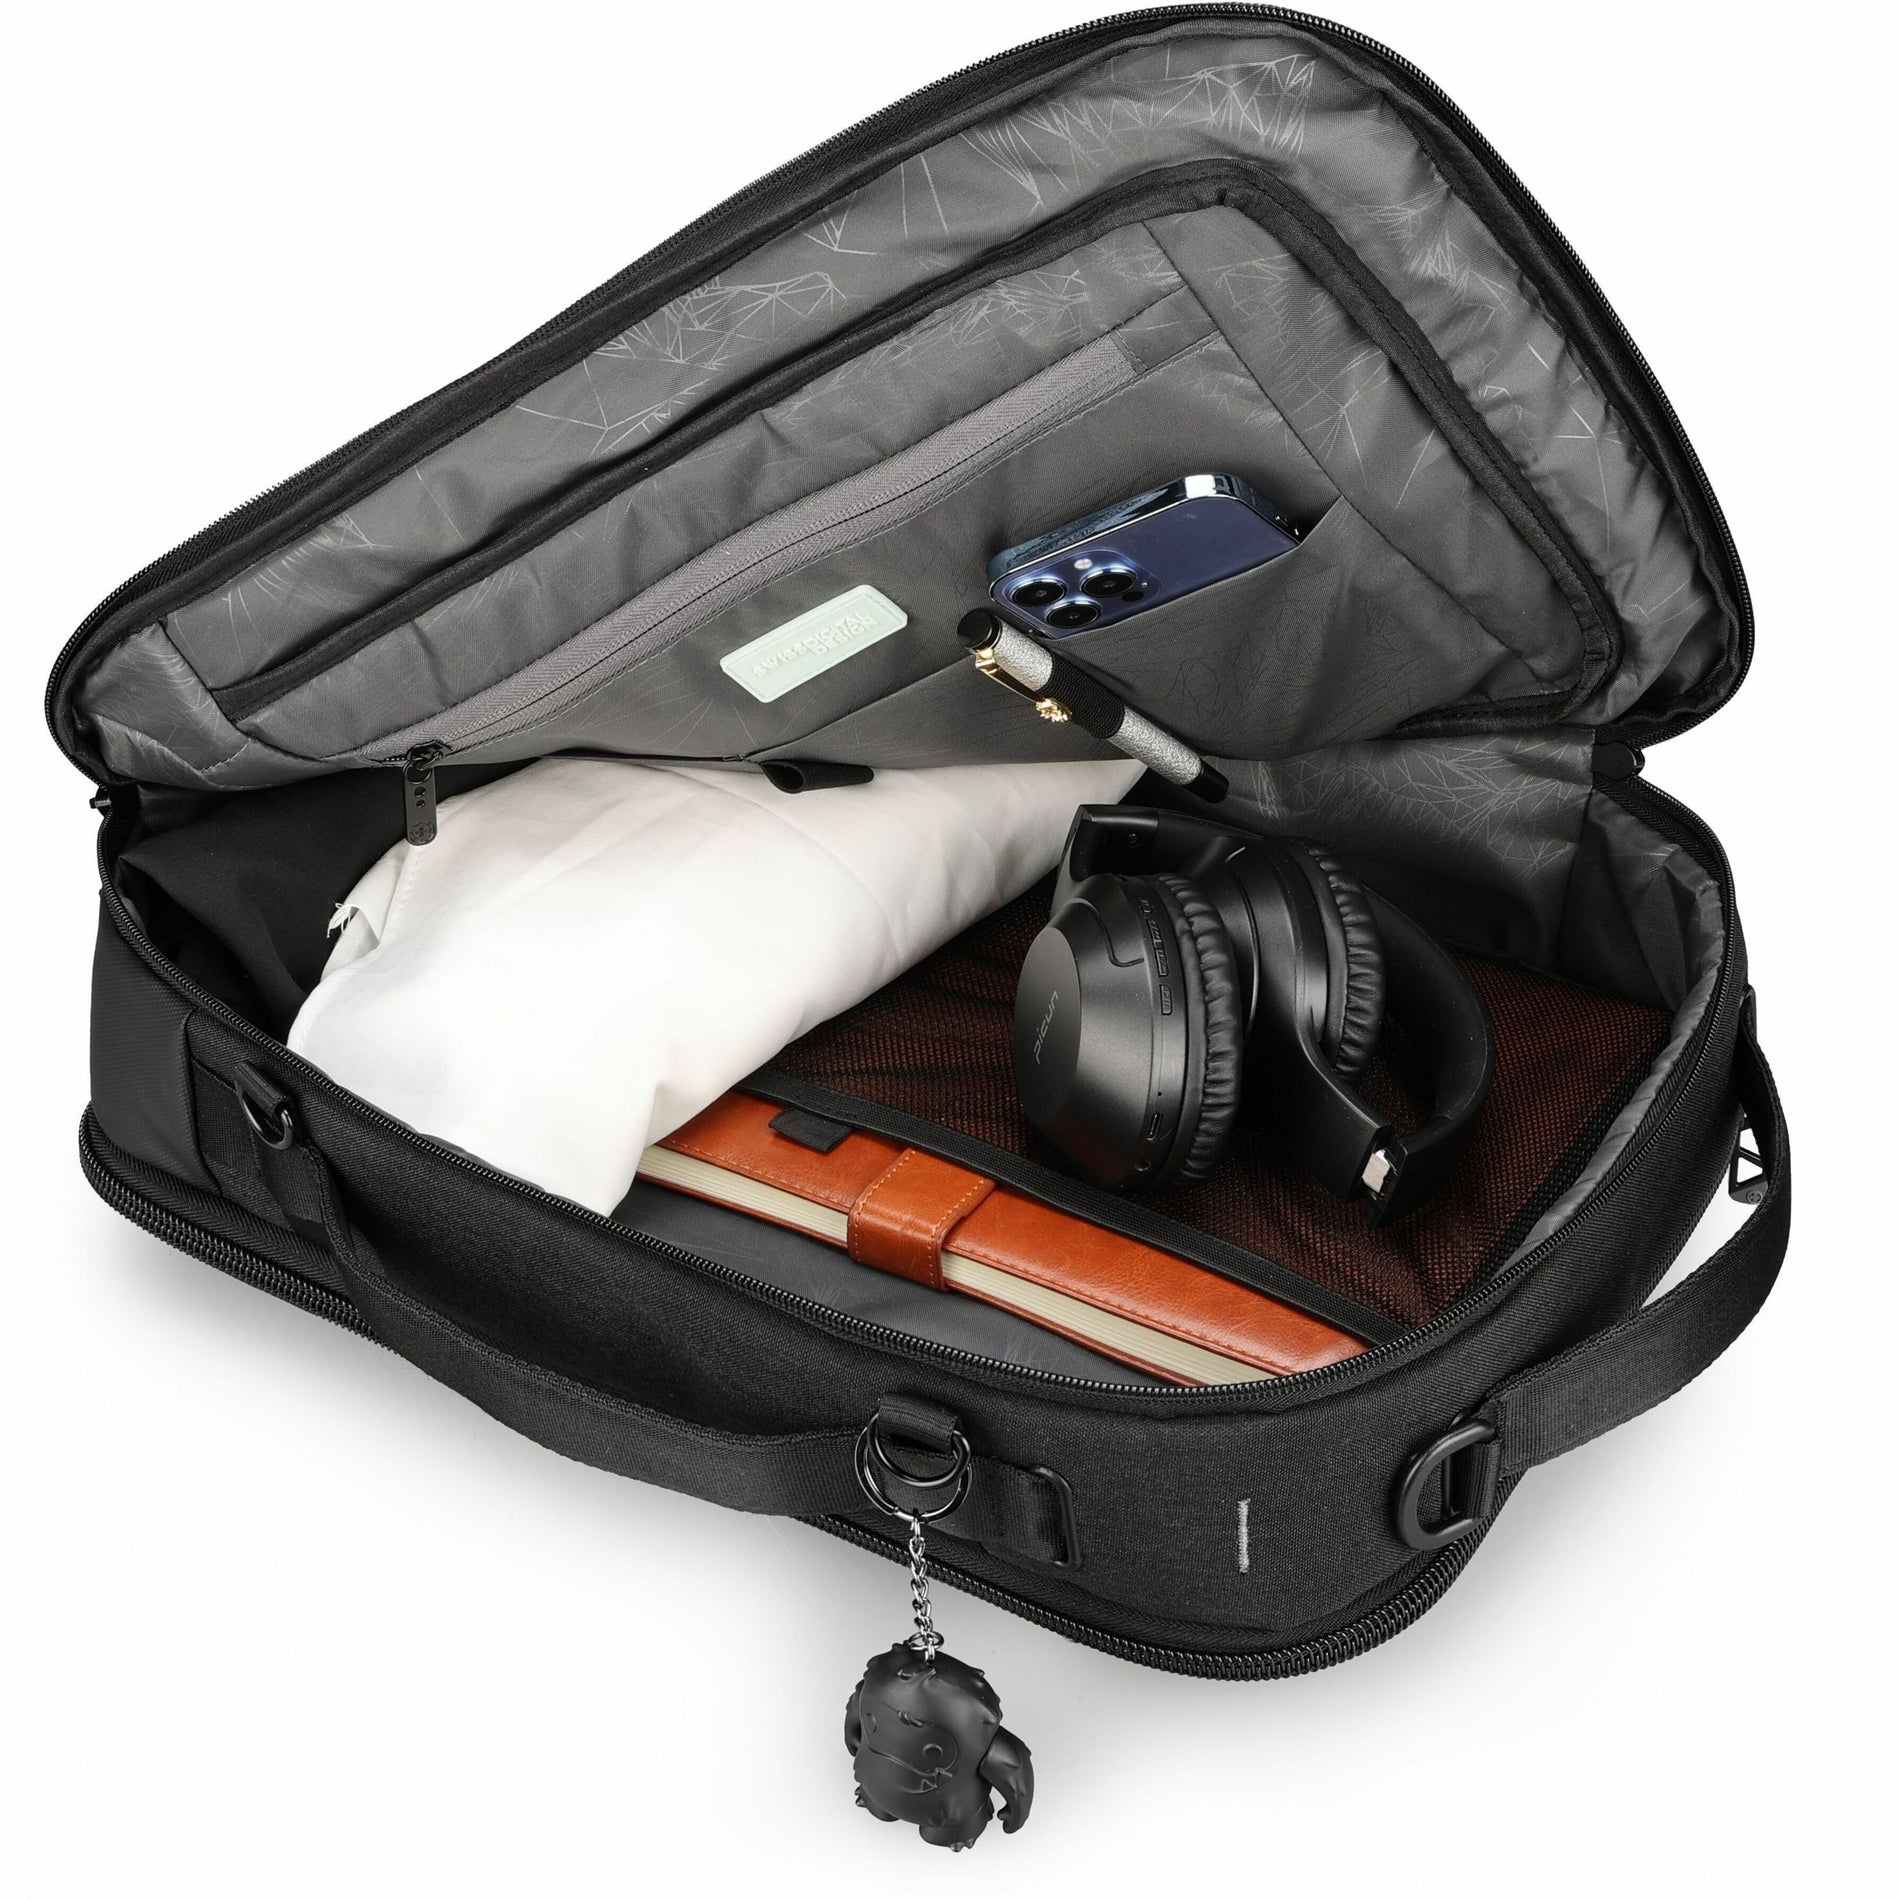 Swissdigital Design (SD164901) Carrying Cases (SD1649-01)